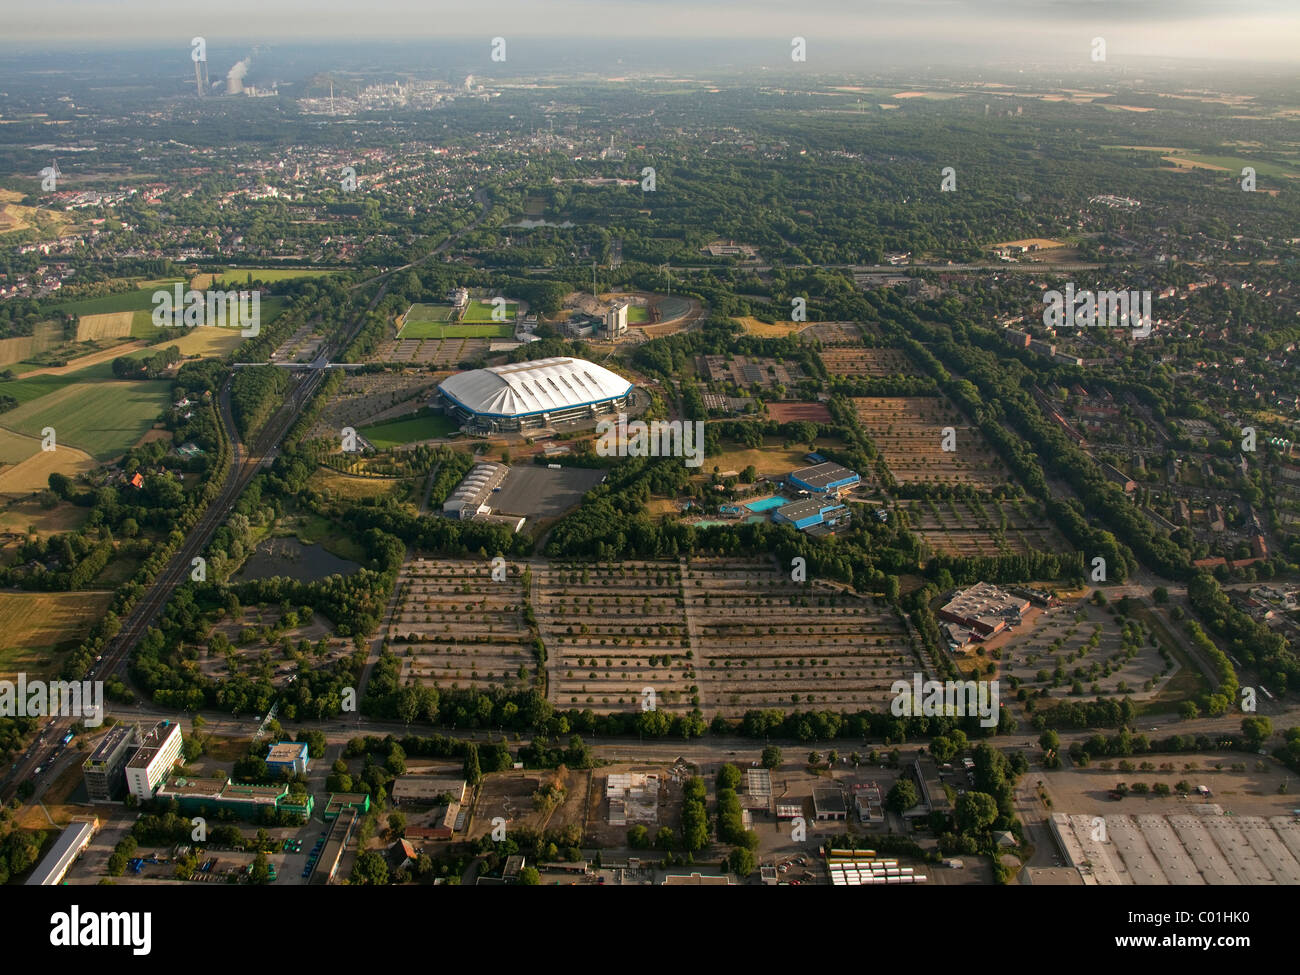 Aerial view, Buer district, Schalkearena stadium, Arena auf Schalke stadium, Veltins-Arena stadium, the former Parkstadion Stock Photo